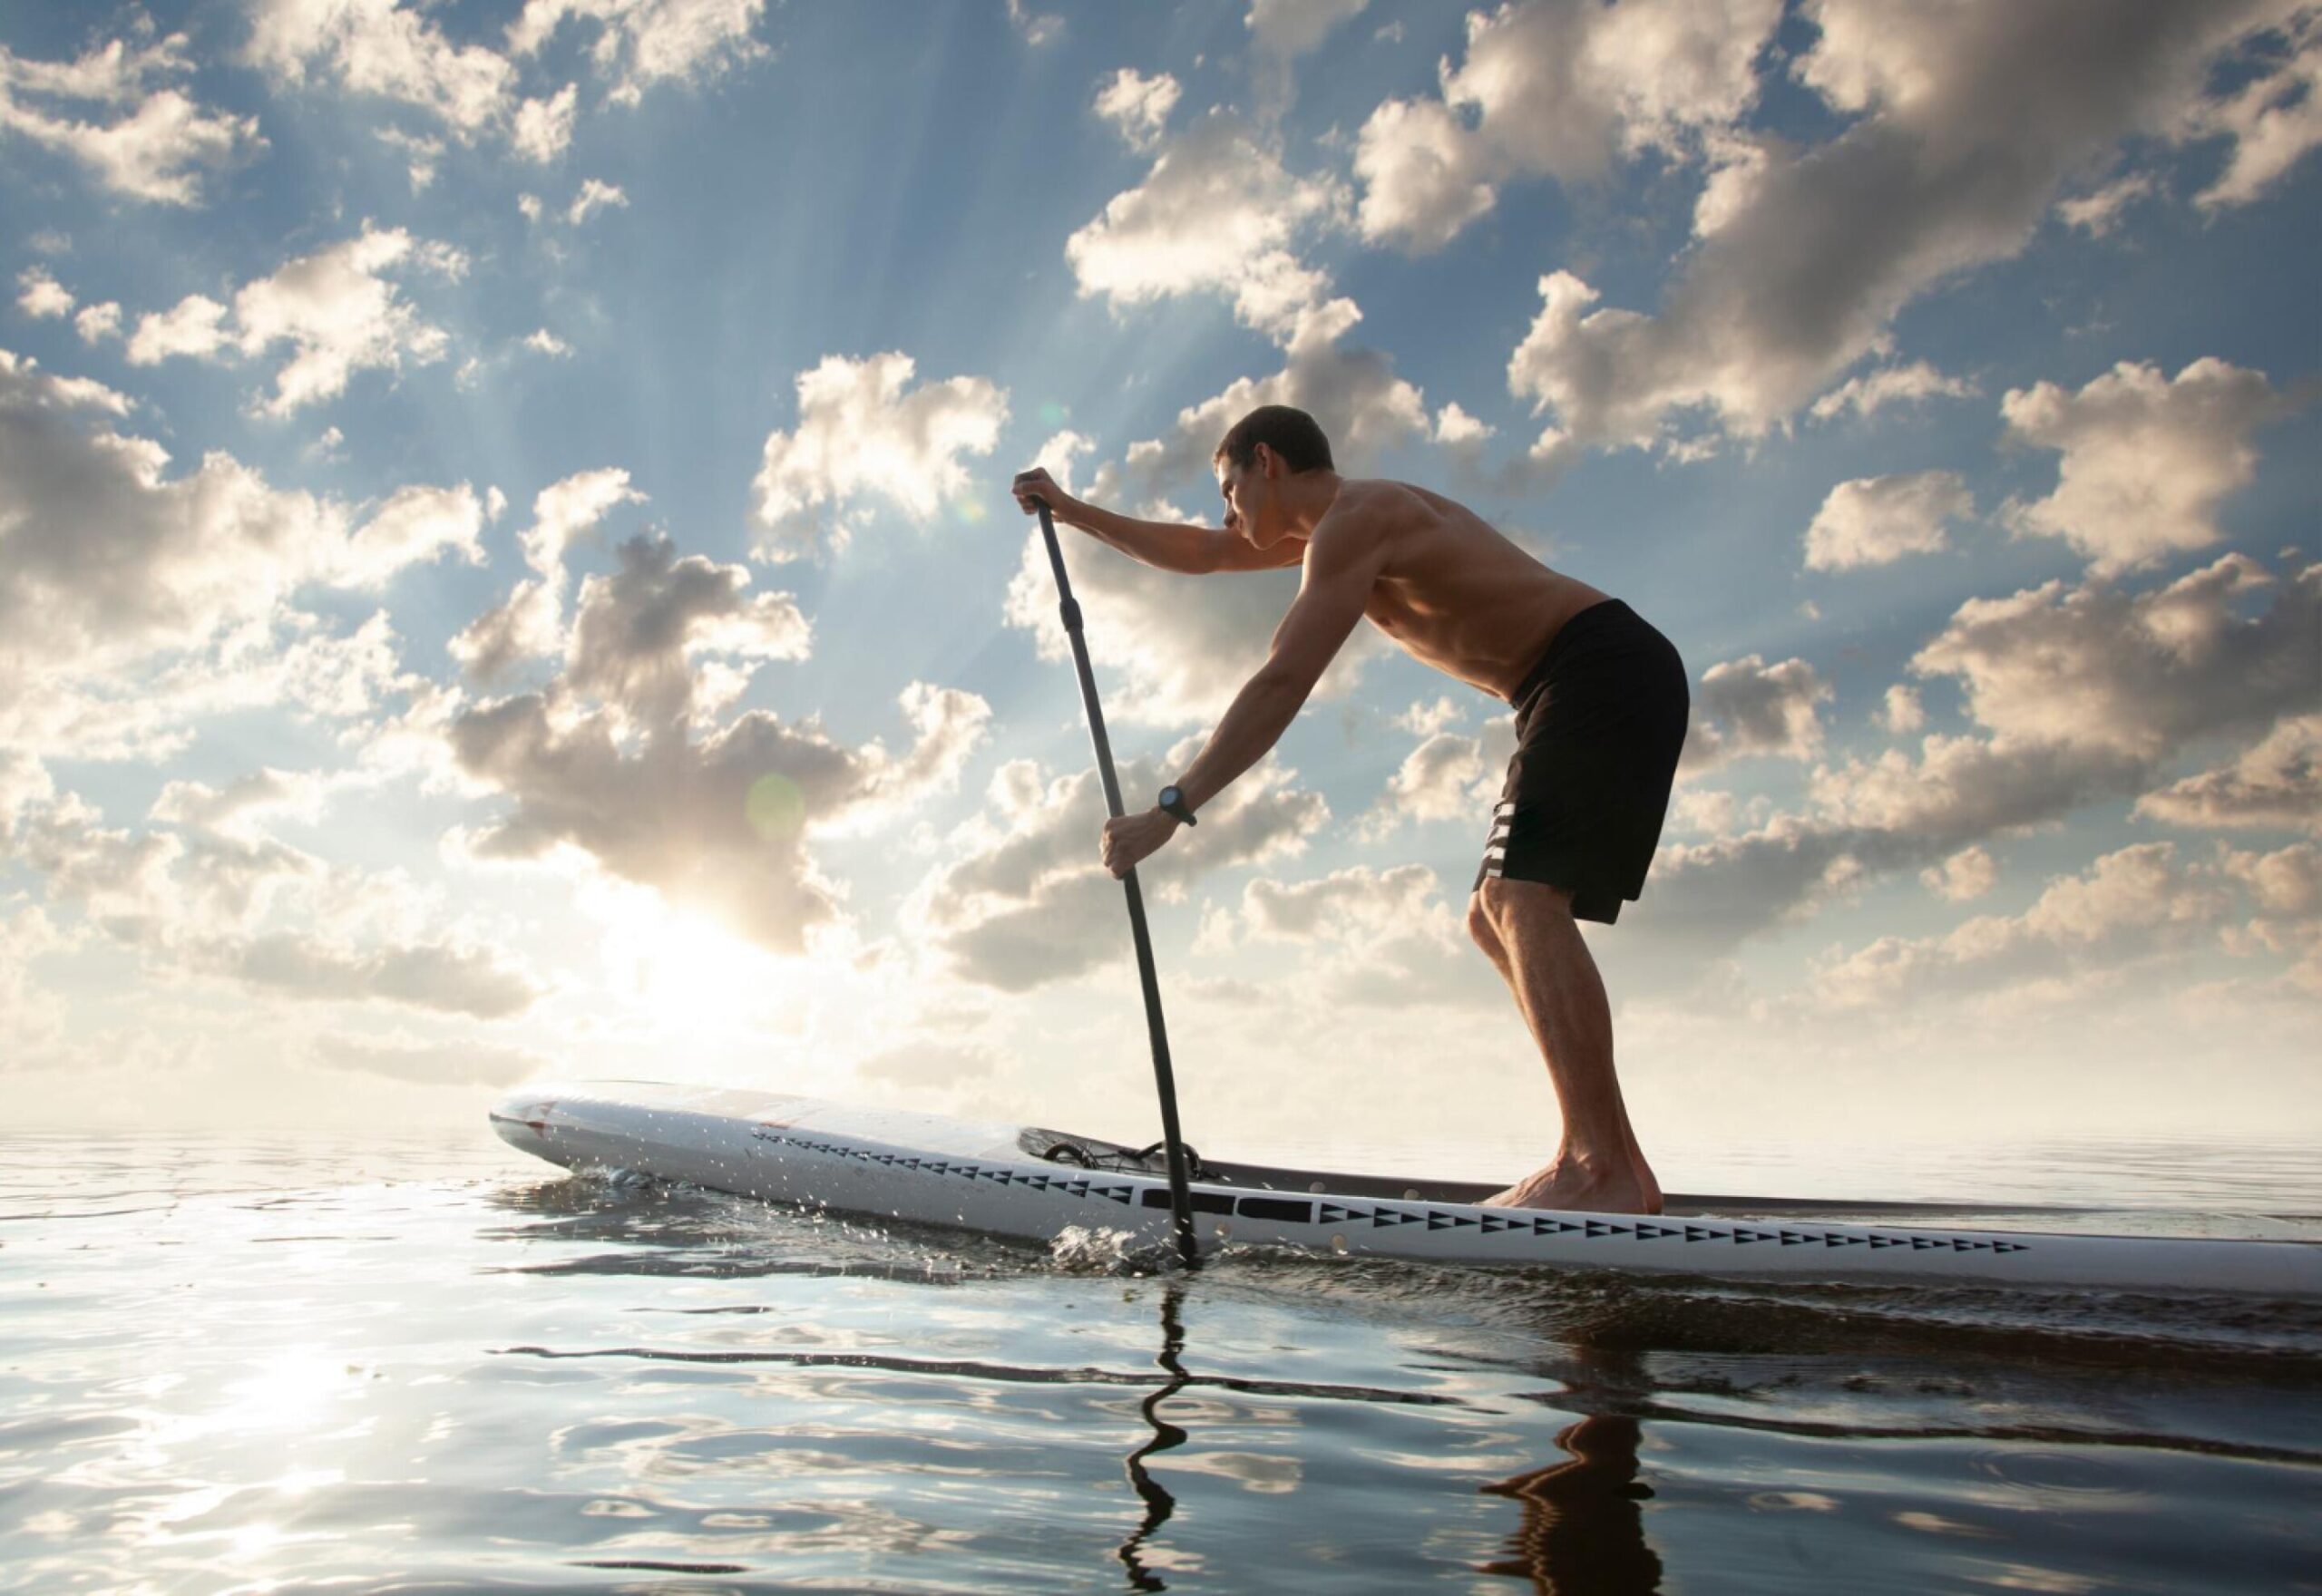 Un deporte completo en el agua y adaptable a todos los niveles: cómo iniciarse en el Stand Up Paddle